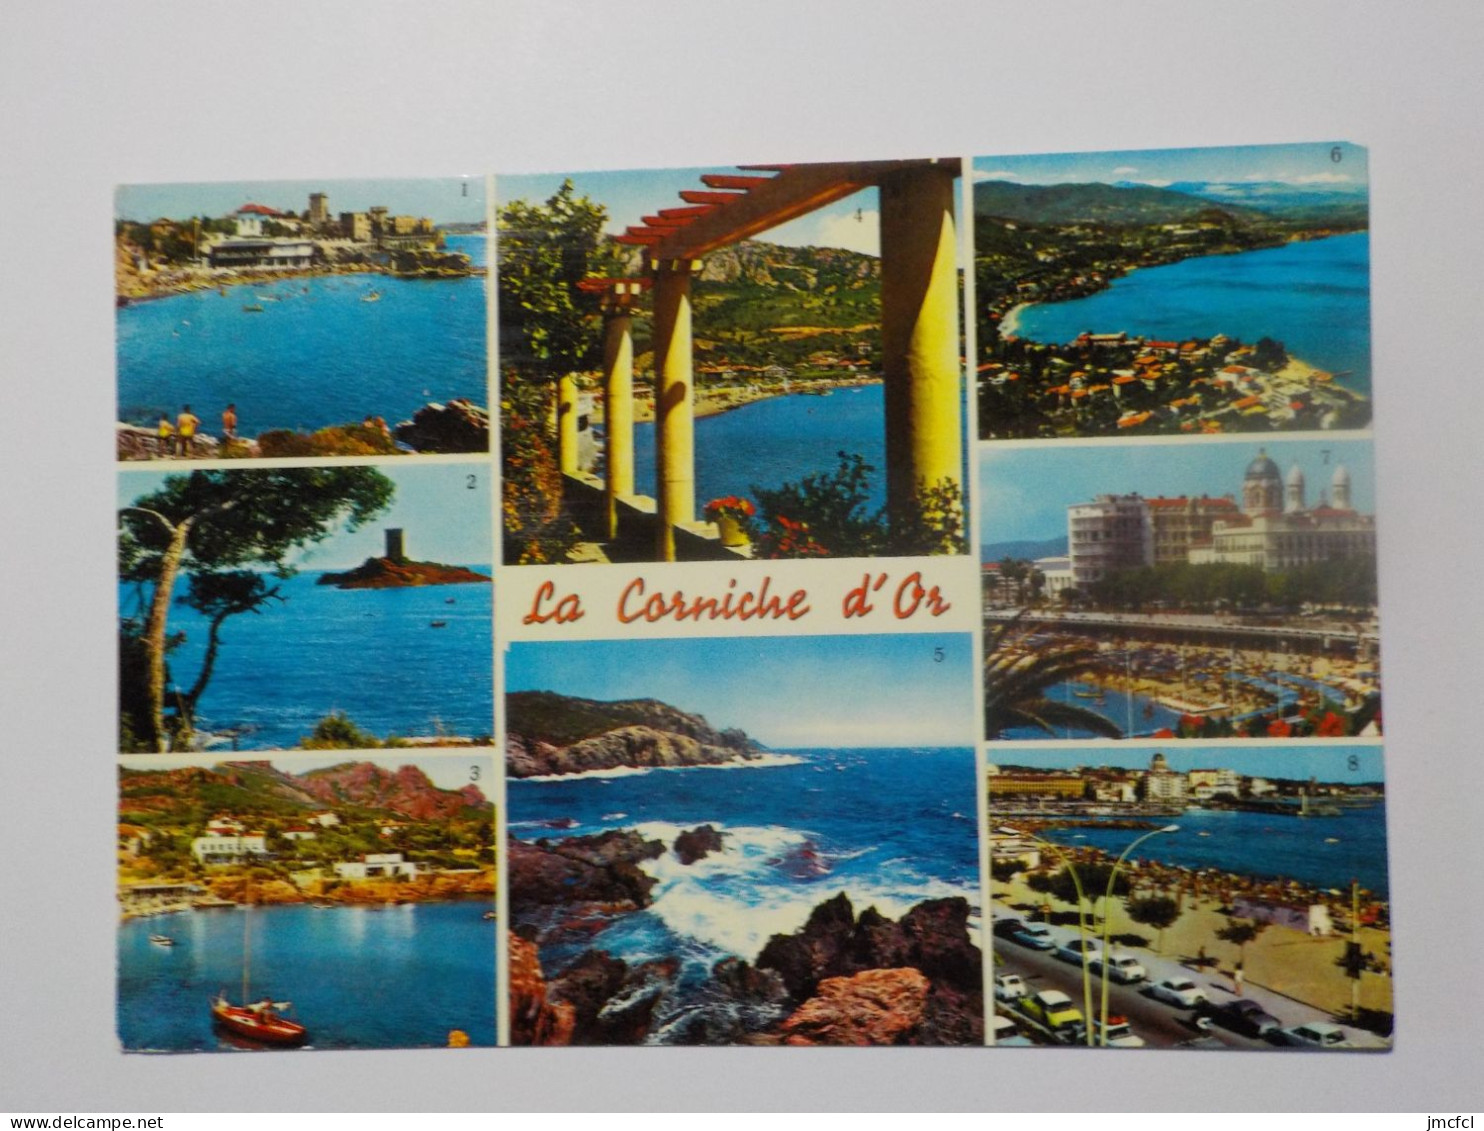 LA MEDITERRANEE (Dept 06-83-13-Cote d'Azur) 54 Cartes a 0.20 euros l'une